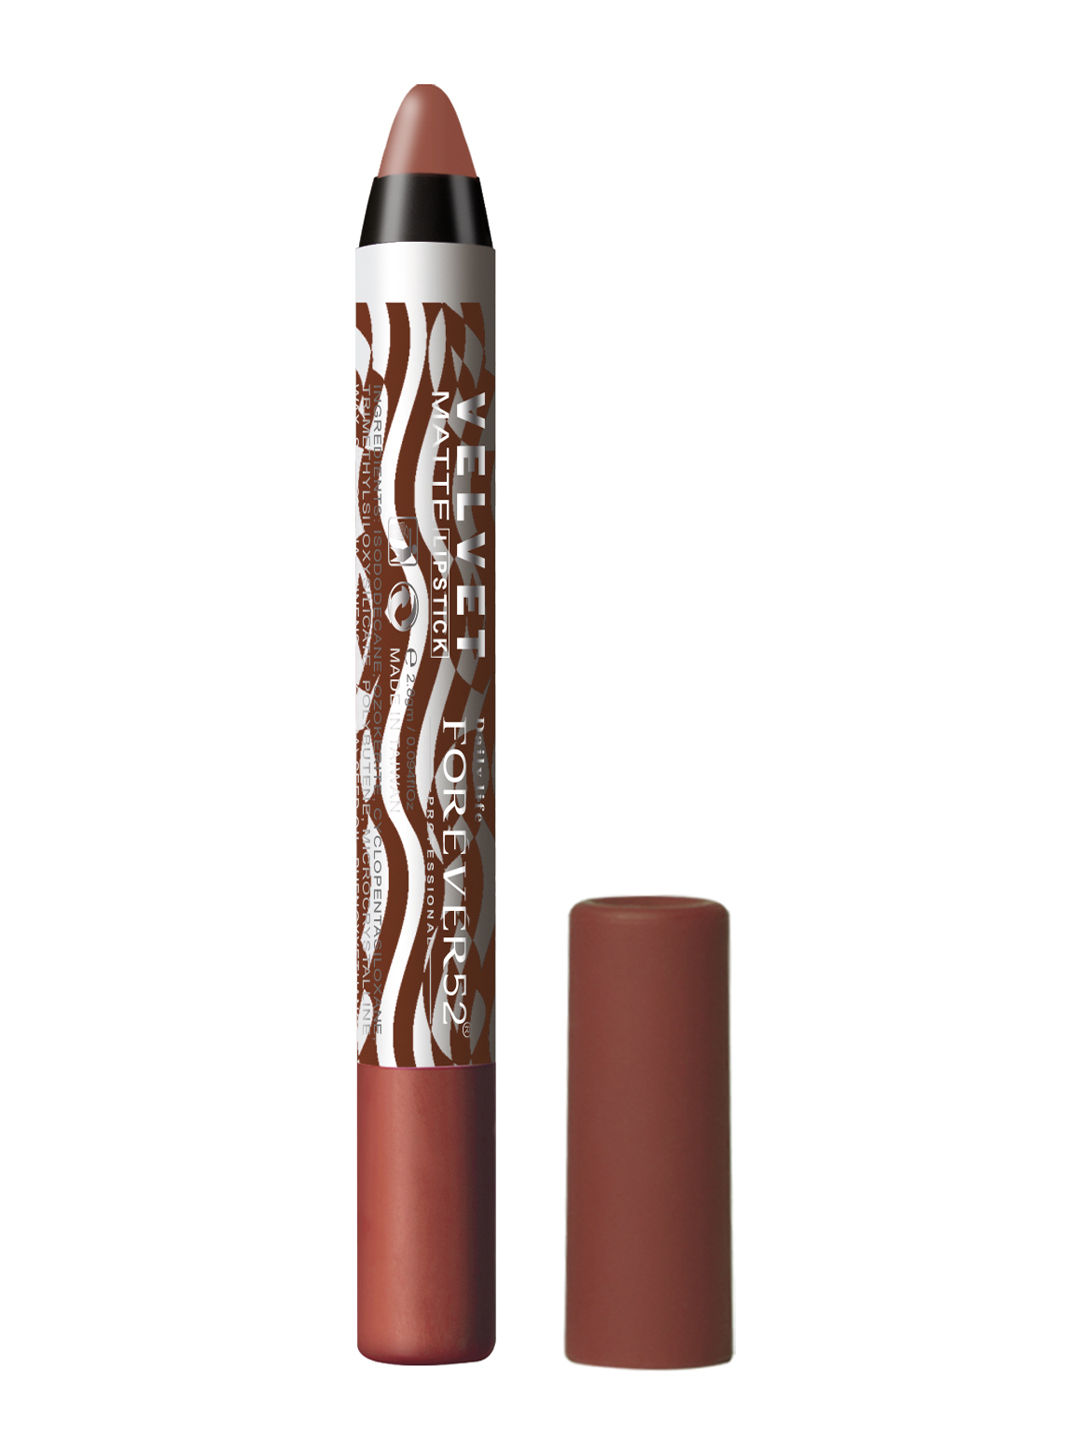 Buy Daily Life Forever52 Valvet Matte Lipstick FT001 (2.8gm) - Purplle